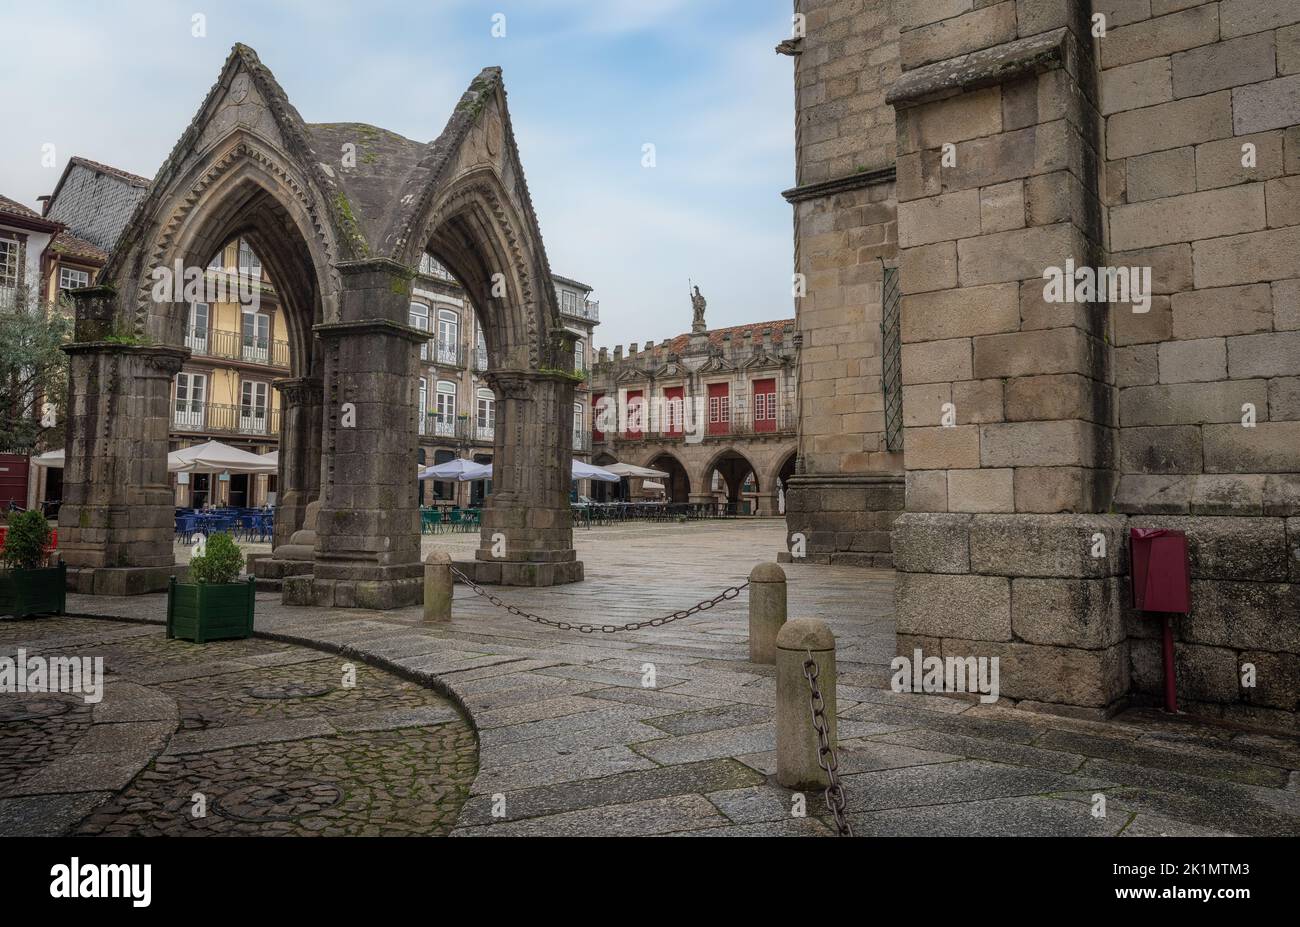 Monumento gotico alla Battaglia di Salado (Padrao do Saldo) e il vecchio municipio di Guimaraes a Largo da Oliveira - Guimaraes, Portogallo Foto Stock